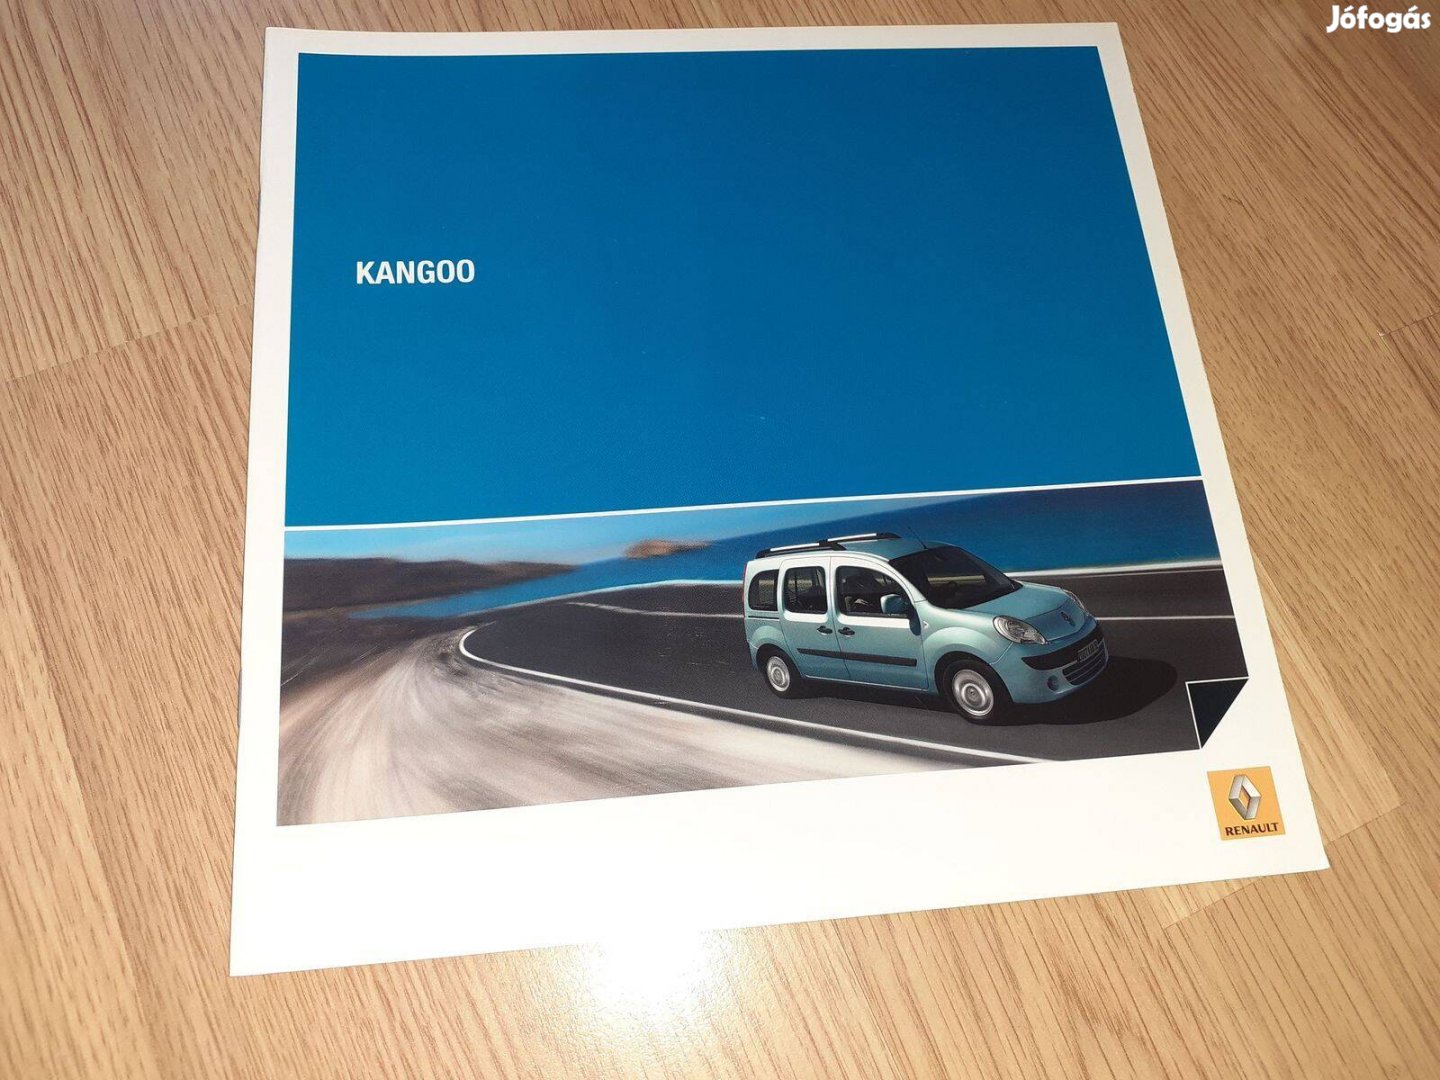 Renault Kangoo prospektus - 2008, magyar nyelvű